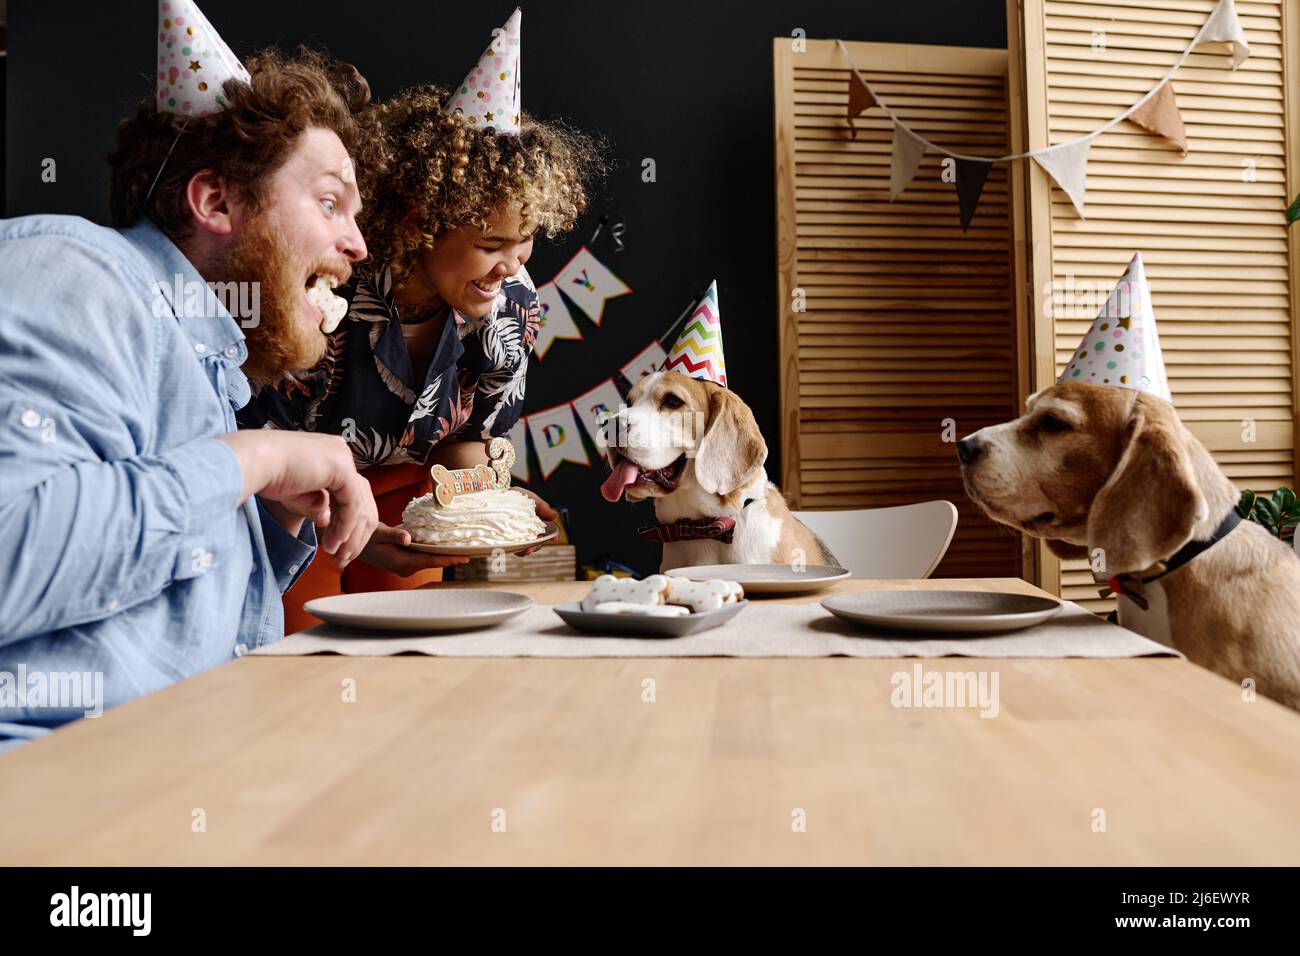 Multiethnisches glückliches Paar, das mit seinen Hunden am Tisch sitzt und gemeinsam mit Kuchen Geburtstag feiert Stockfoto